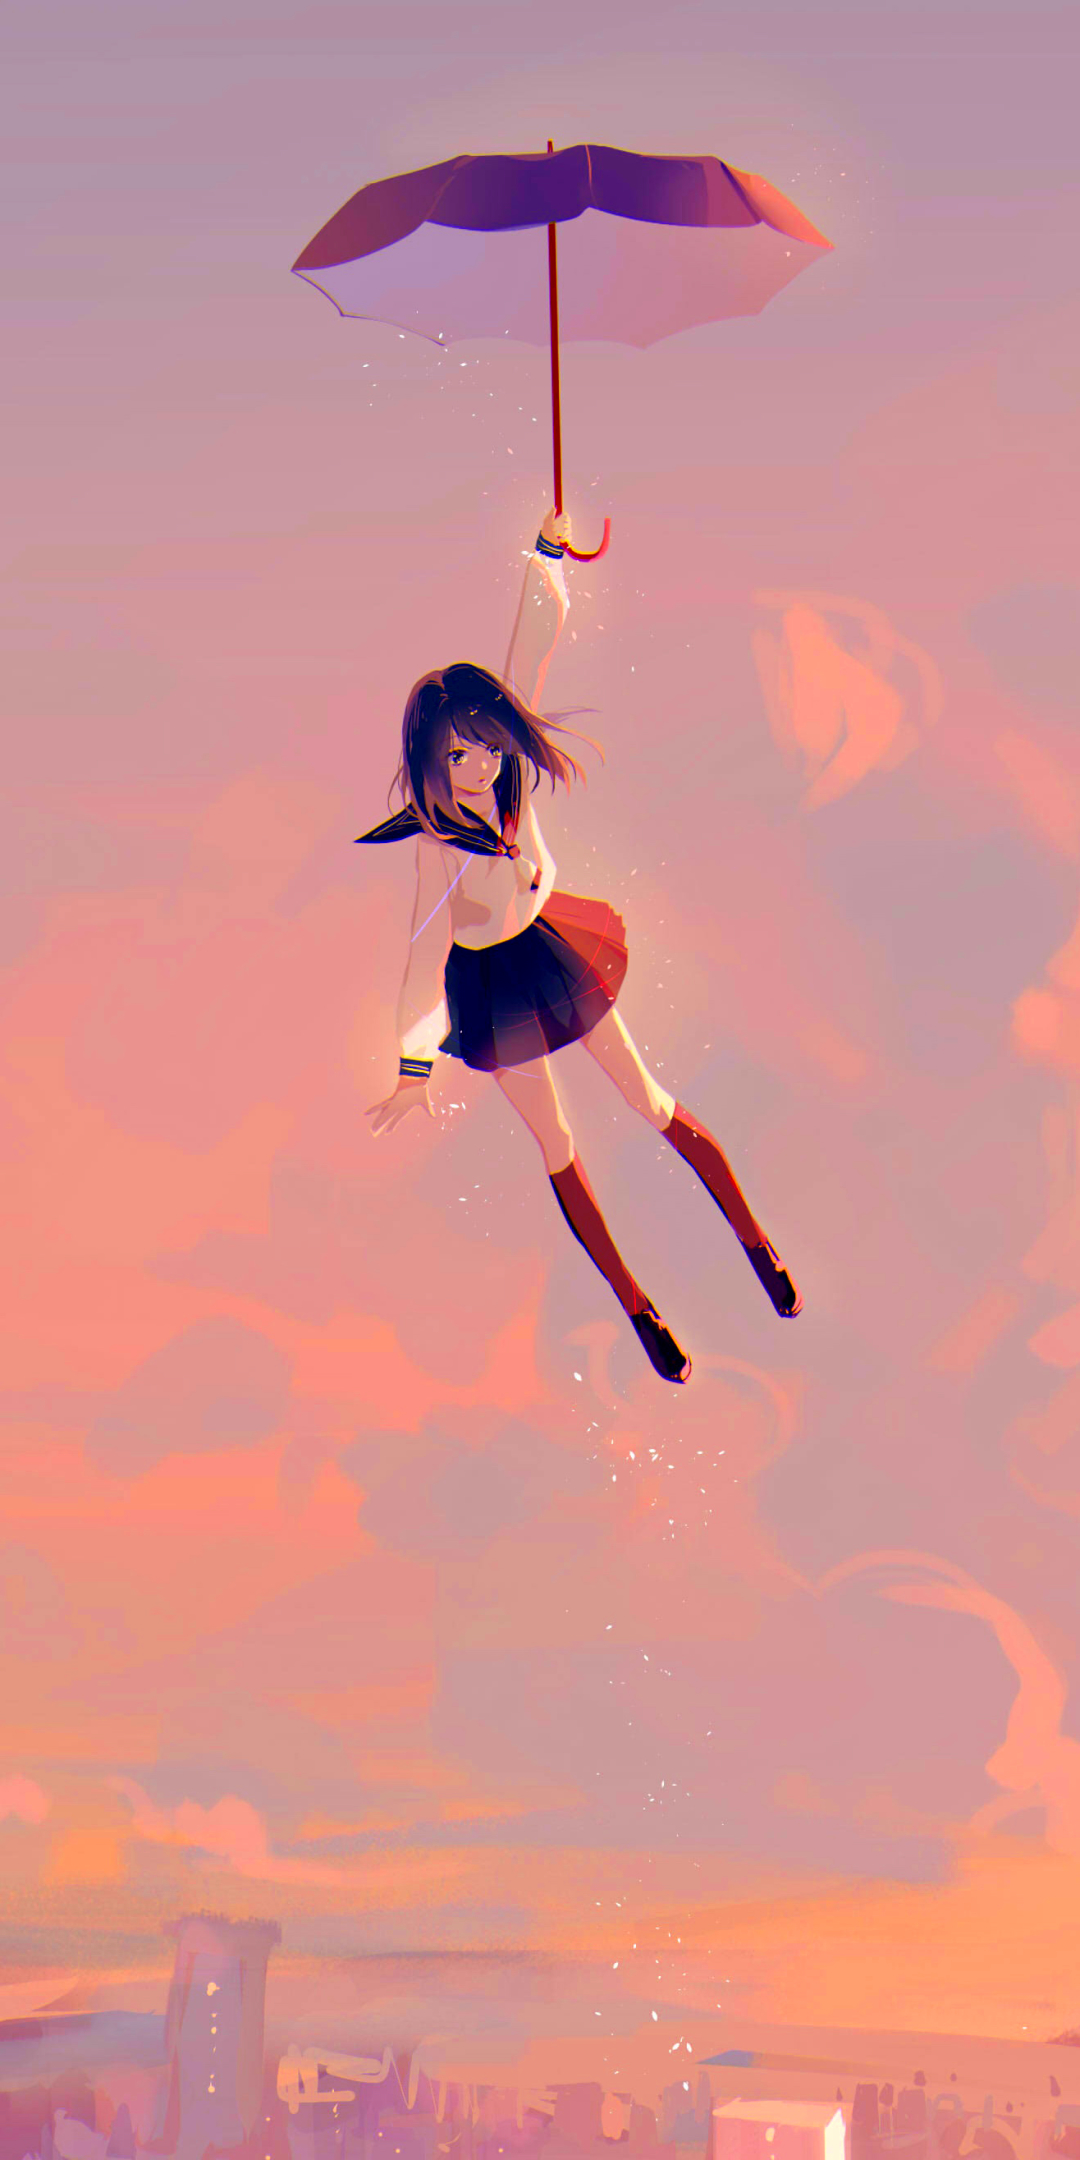 Скачать картинку Аниме, Девочка, Летающий в телефон бесплатно.